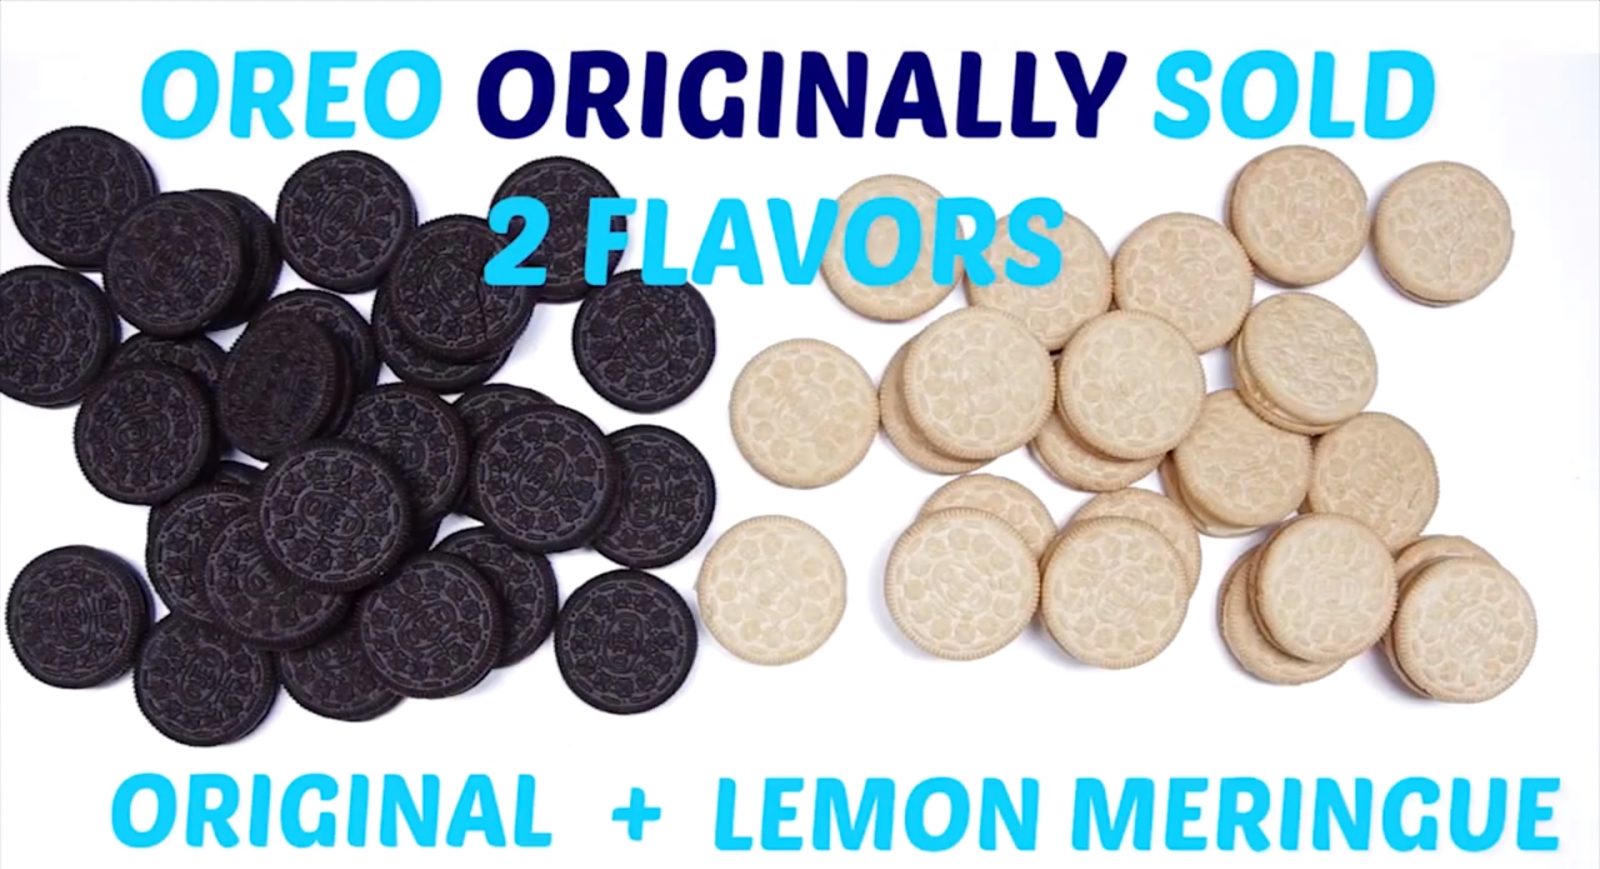 Original Oreos had 2 Flavors